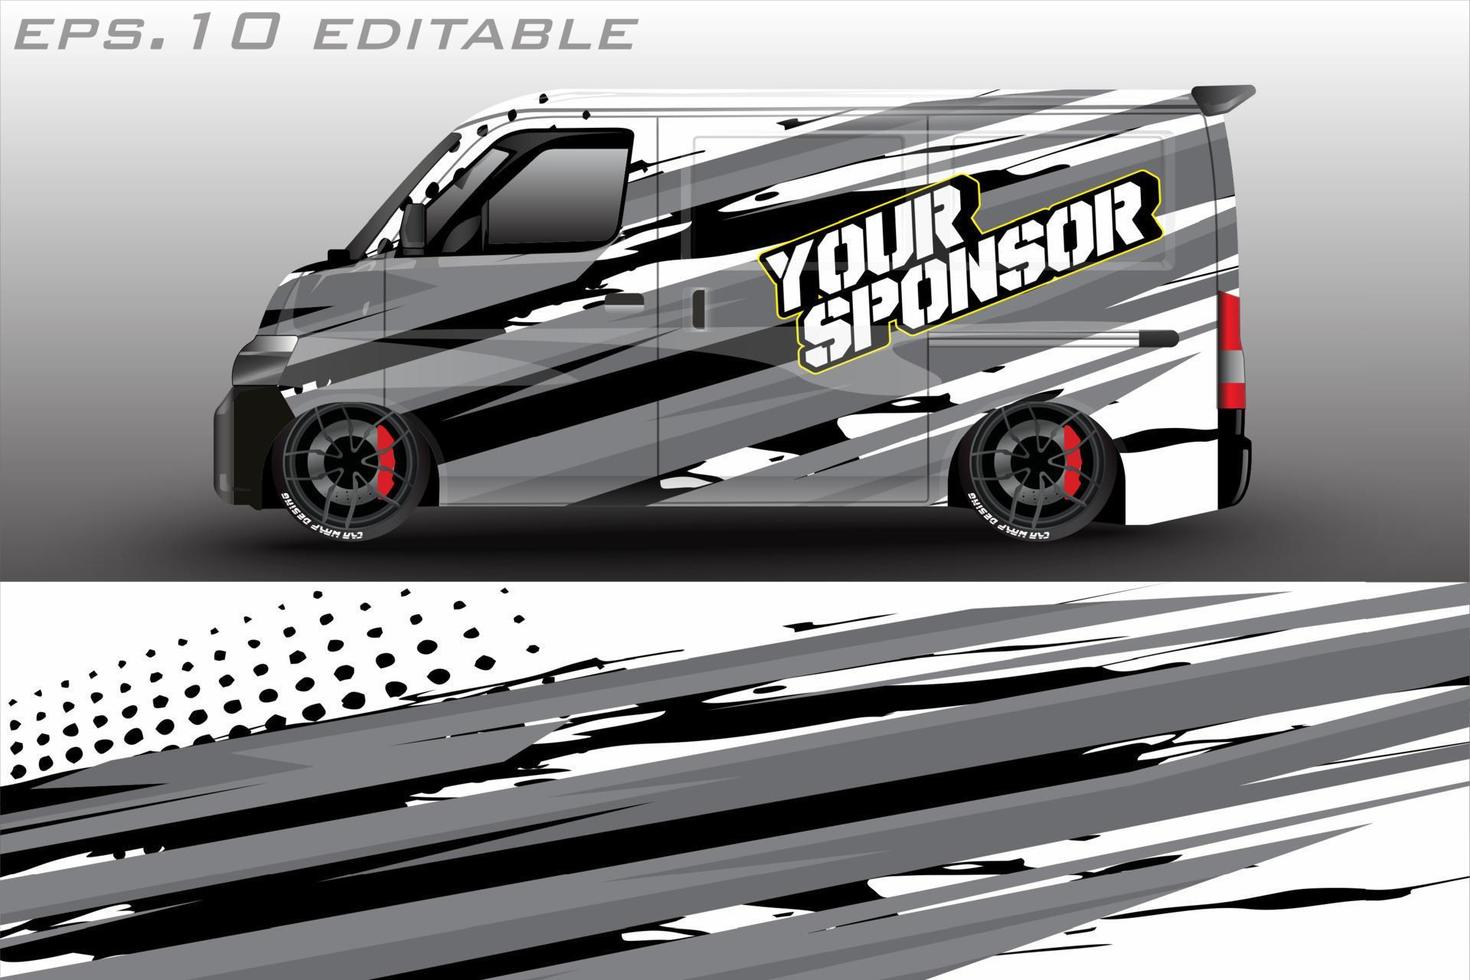 auto grafisch vector ontwerp. abstract racing vorm met modern camouflage ontwerp voor voertuig vinyl inpakken